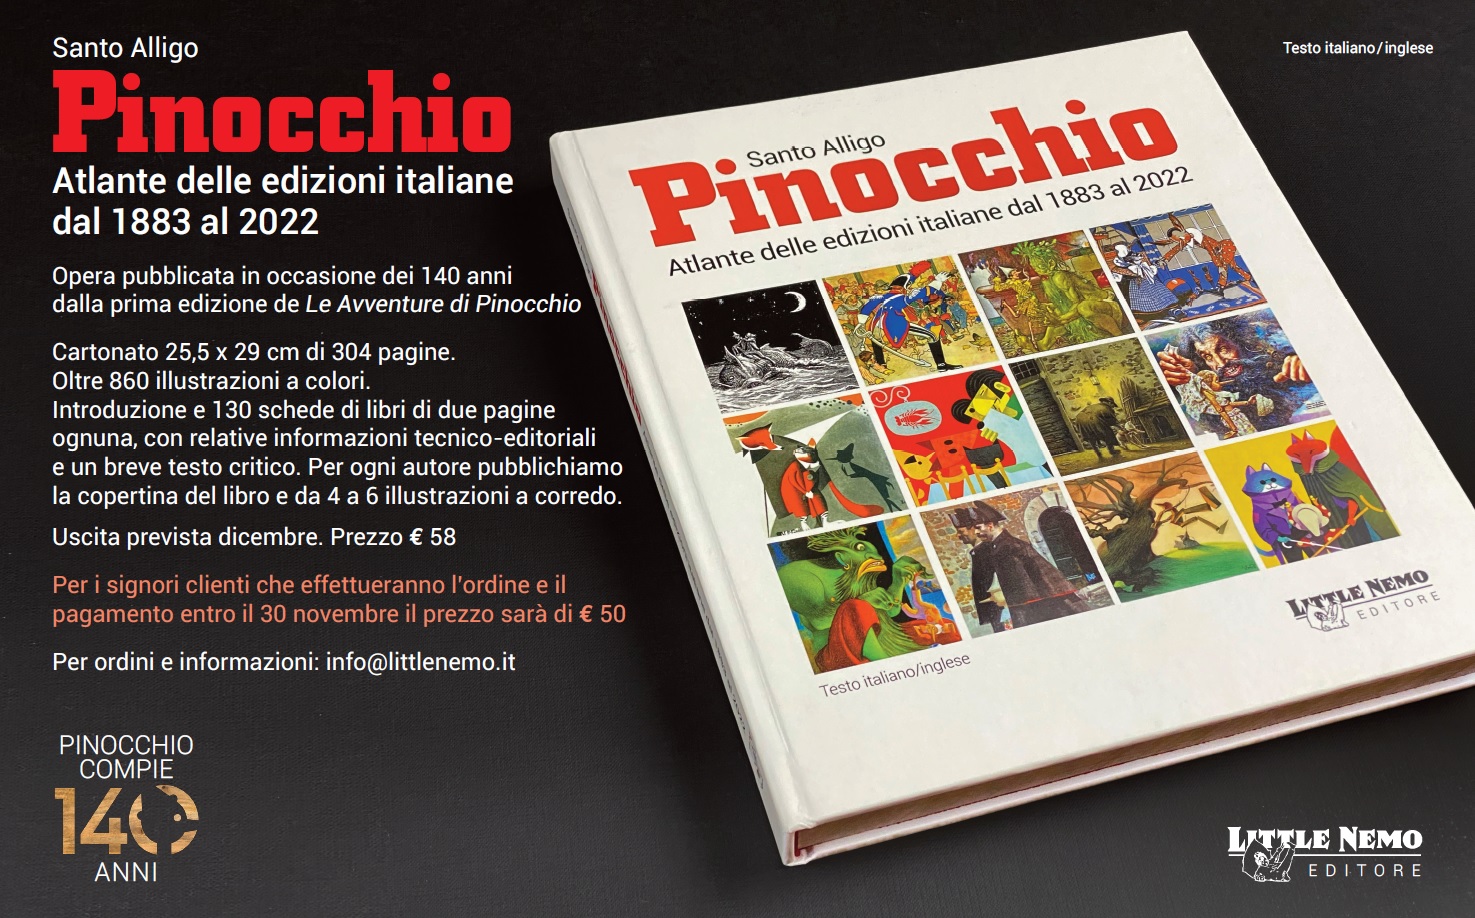 Santo Alligo - Pinocchio: Atlante delle edizioni italiane dal 1883 al 2022